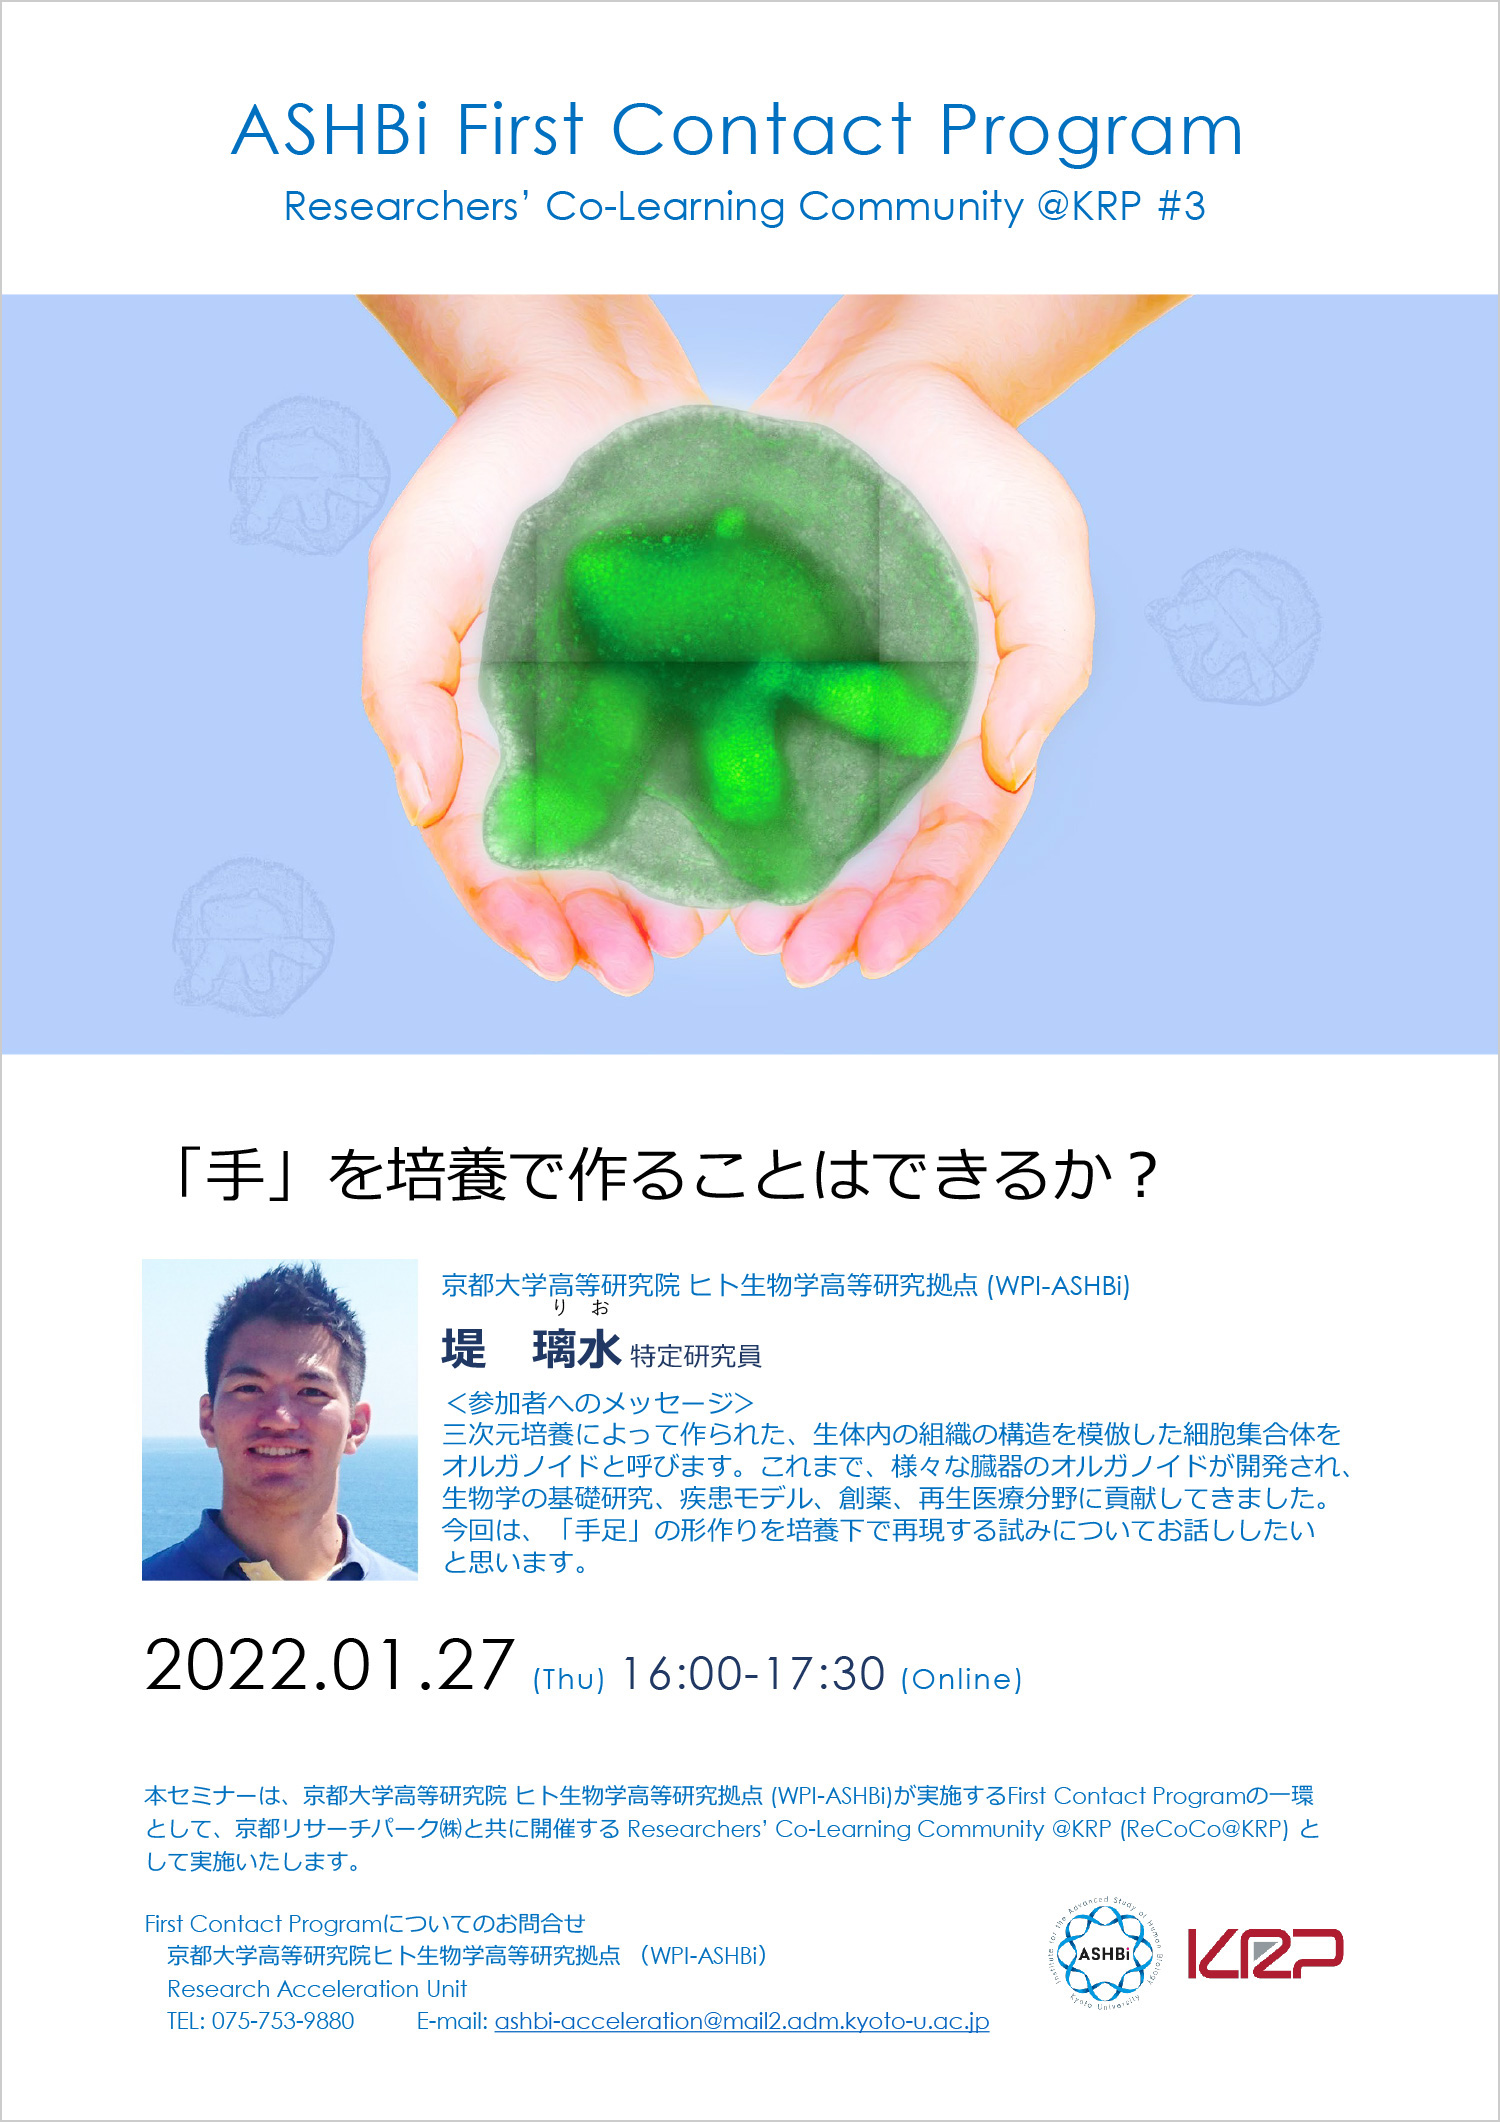 First Contact Program #3 (Dr. Rio Tsutsumi)